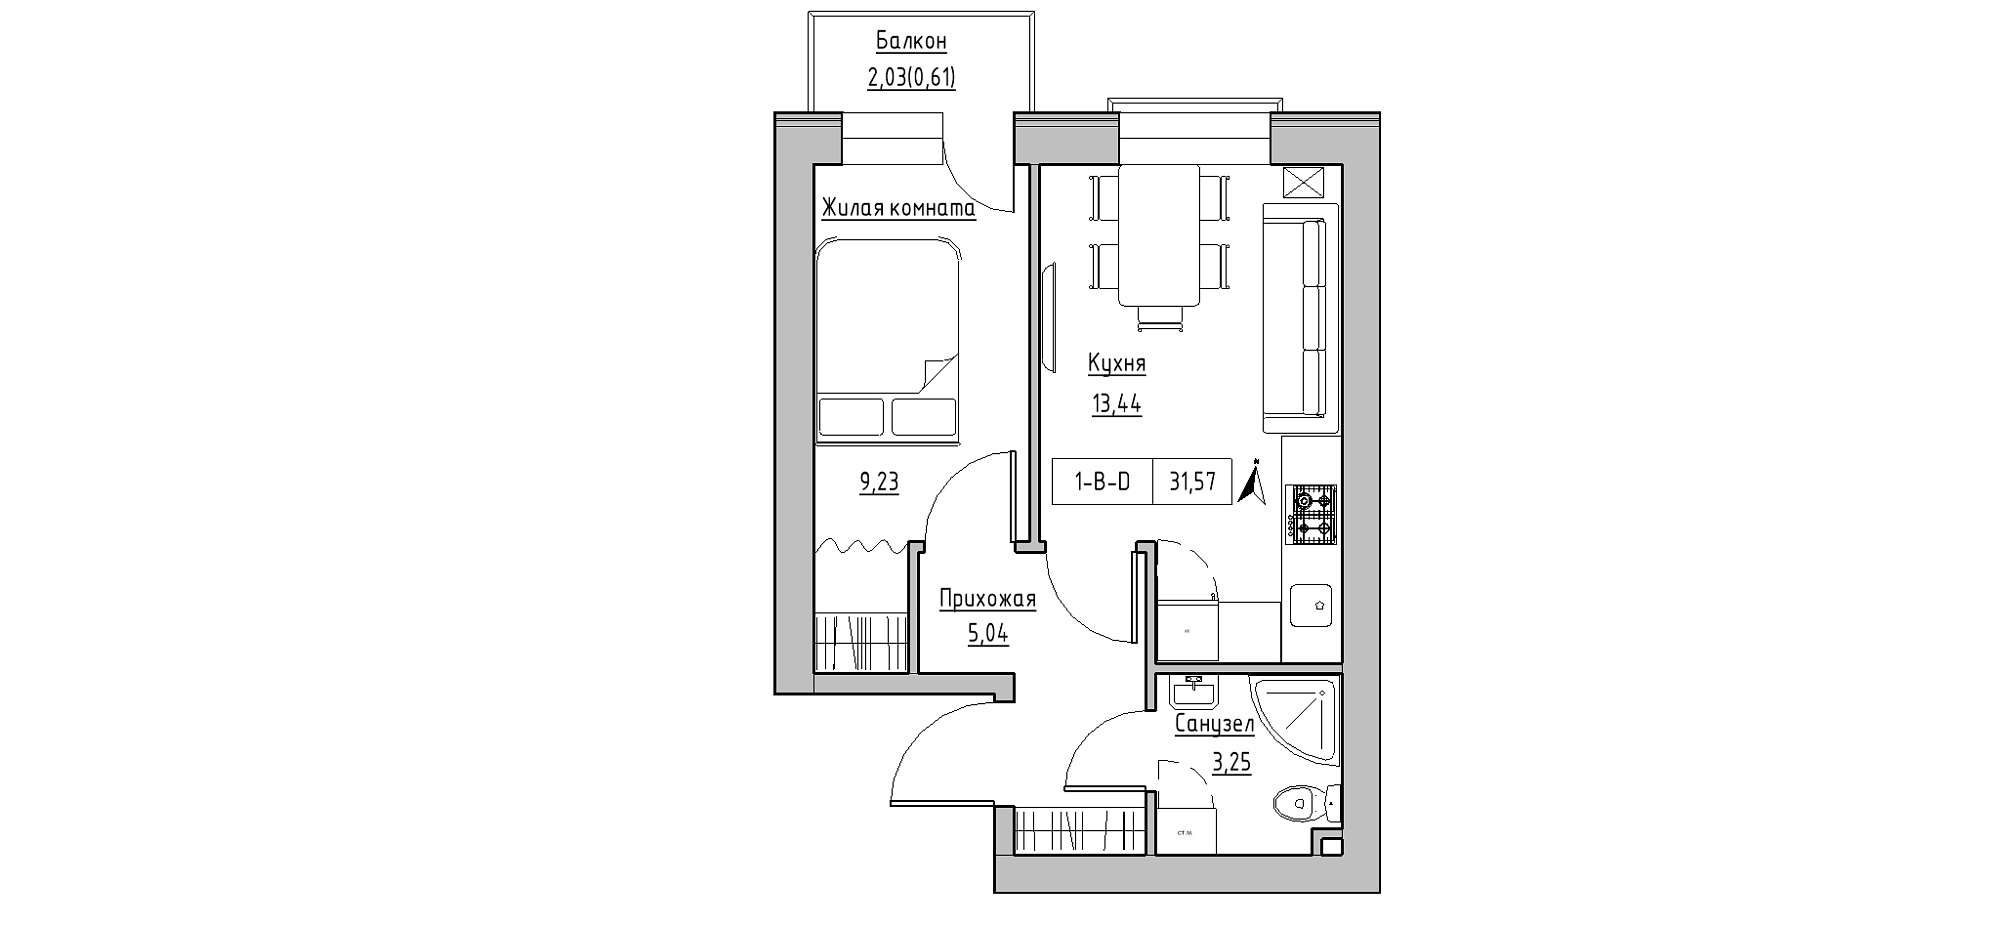 Планировка 1-к квартира площей 31.57м2, KS-020-04/0003.